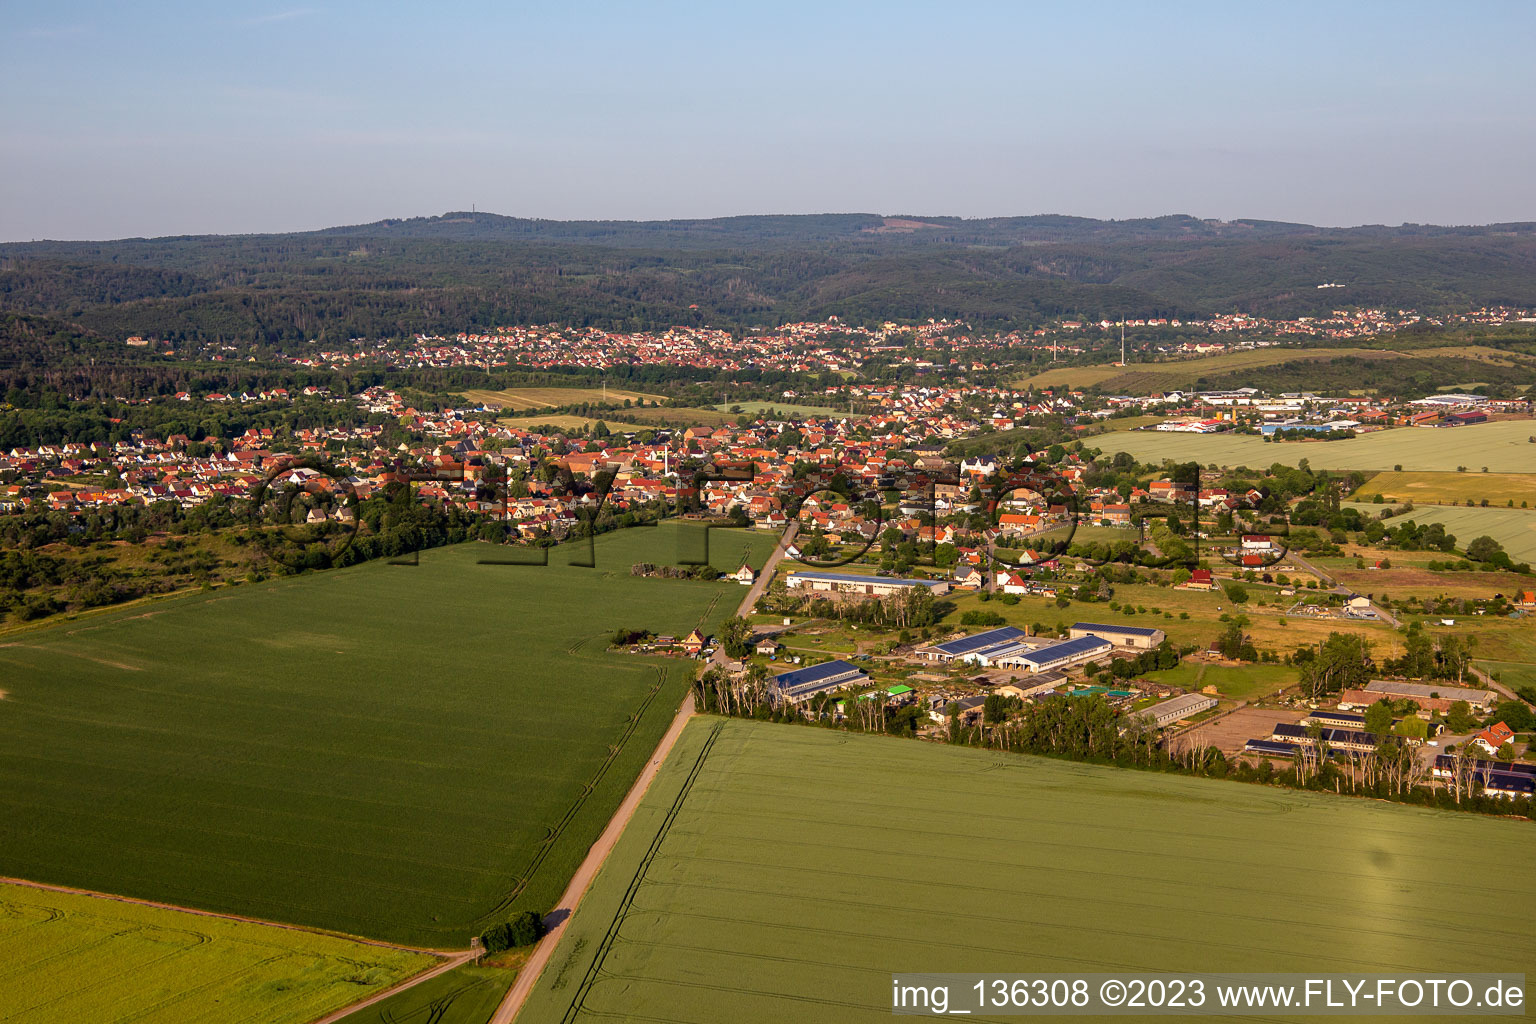 Herzfeldweg in the district Rieder in Ballenstedt in the state Saxony-Anhalt, Germany